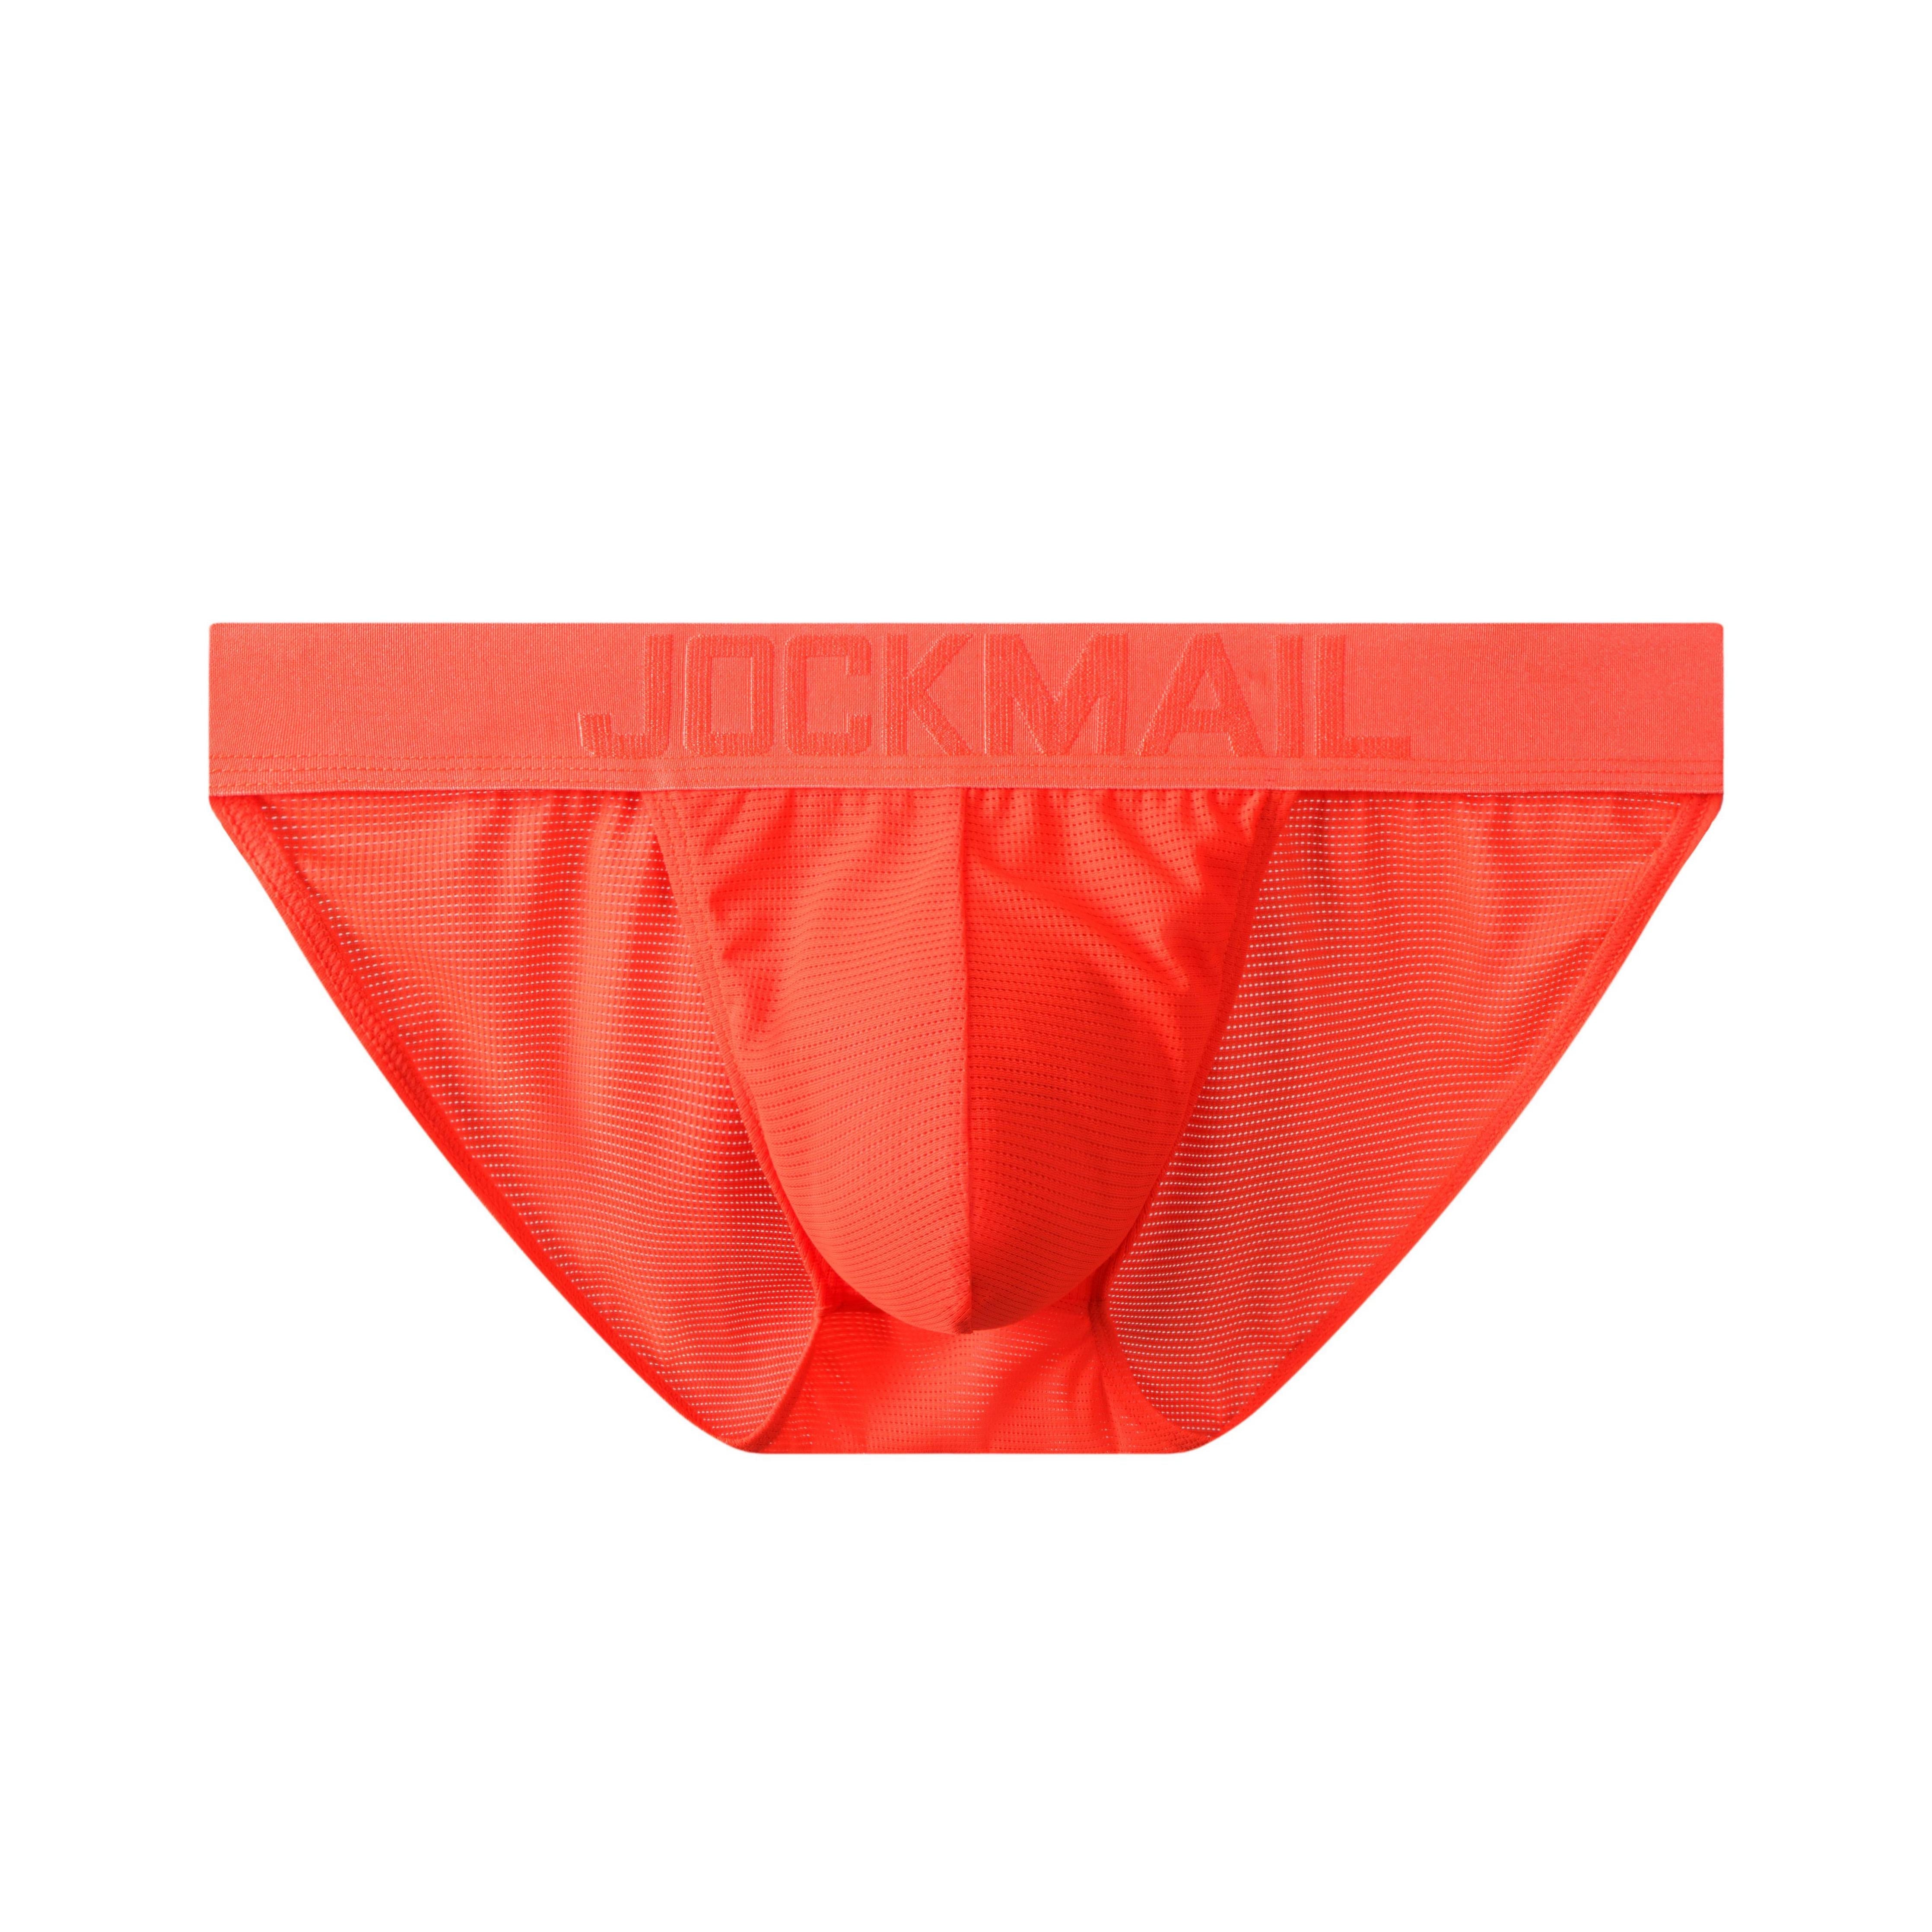 Men's Sexy Underwear - Jockmail Neon Mesh Briefs 4-Pack – Oh My!